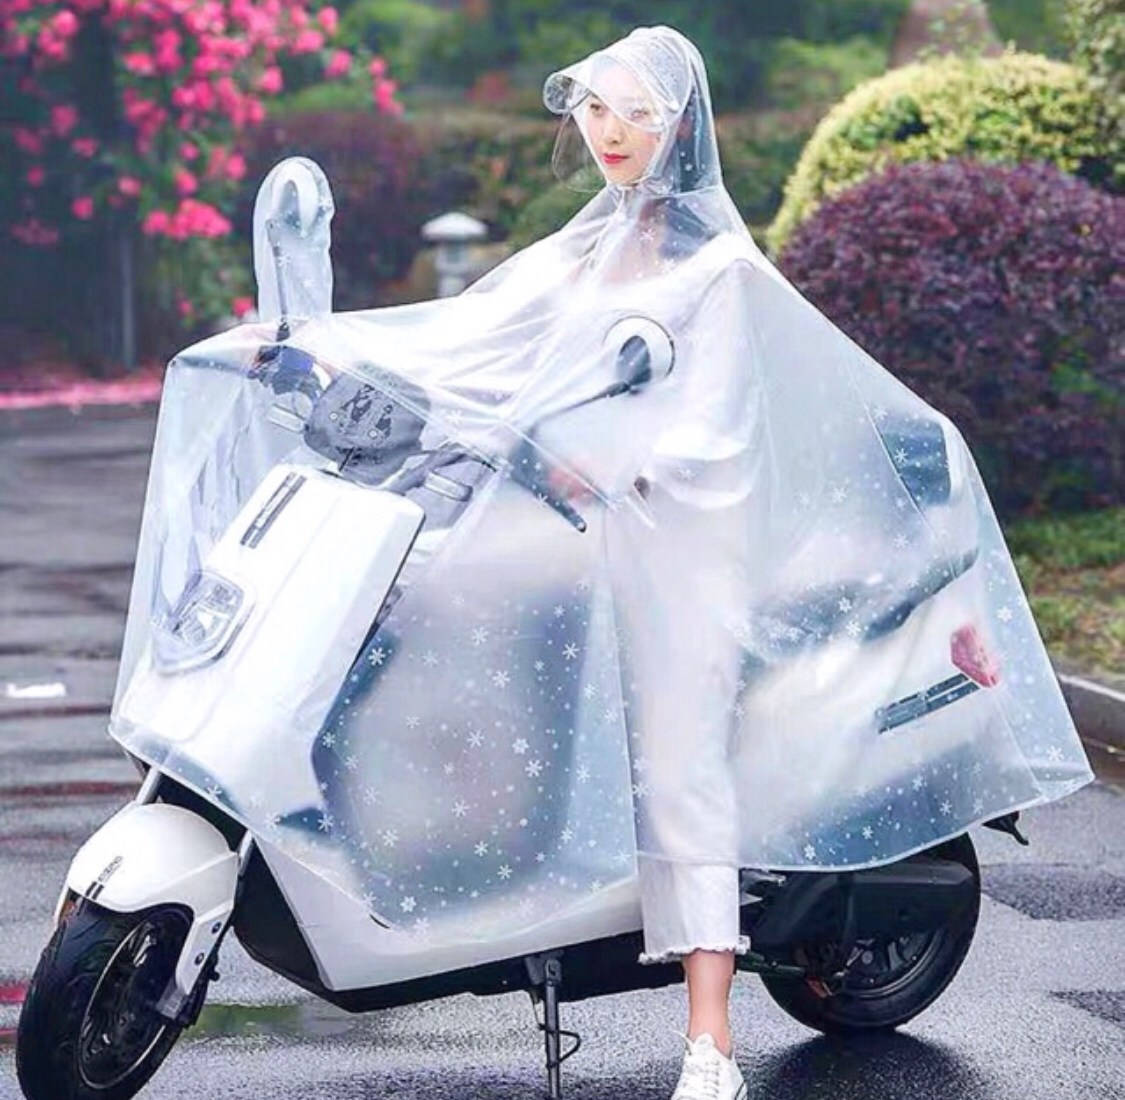 เสื้อคลุมกันฝนแบบใส สำหรับ 1 คน เหมาะสำหรับรถมอเตอร์ไซต์ รุ่น ไม่เกิน 150 cc